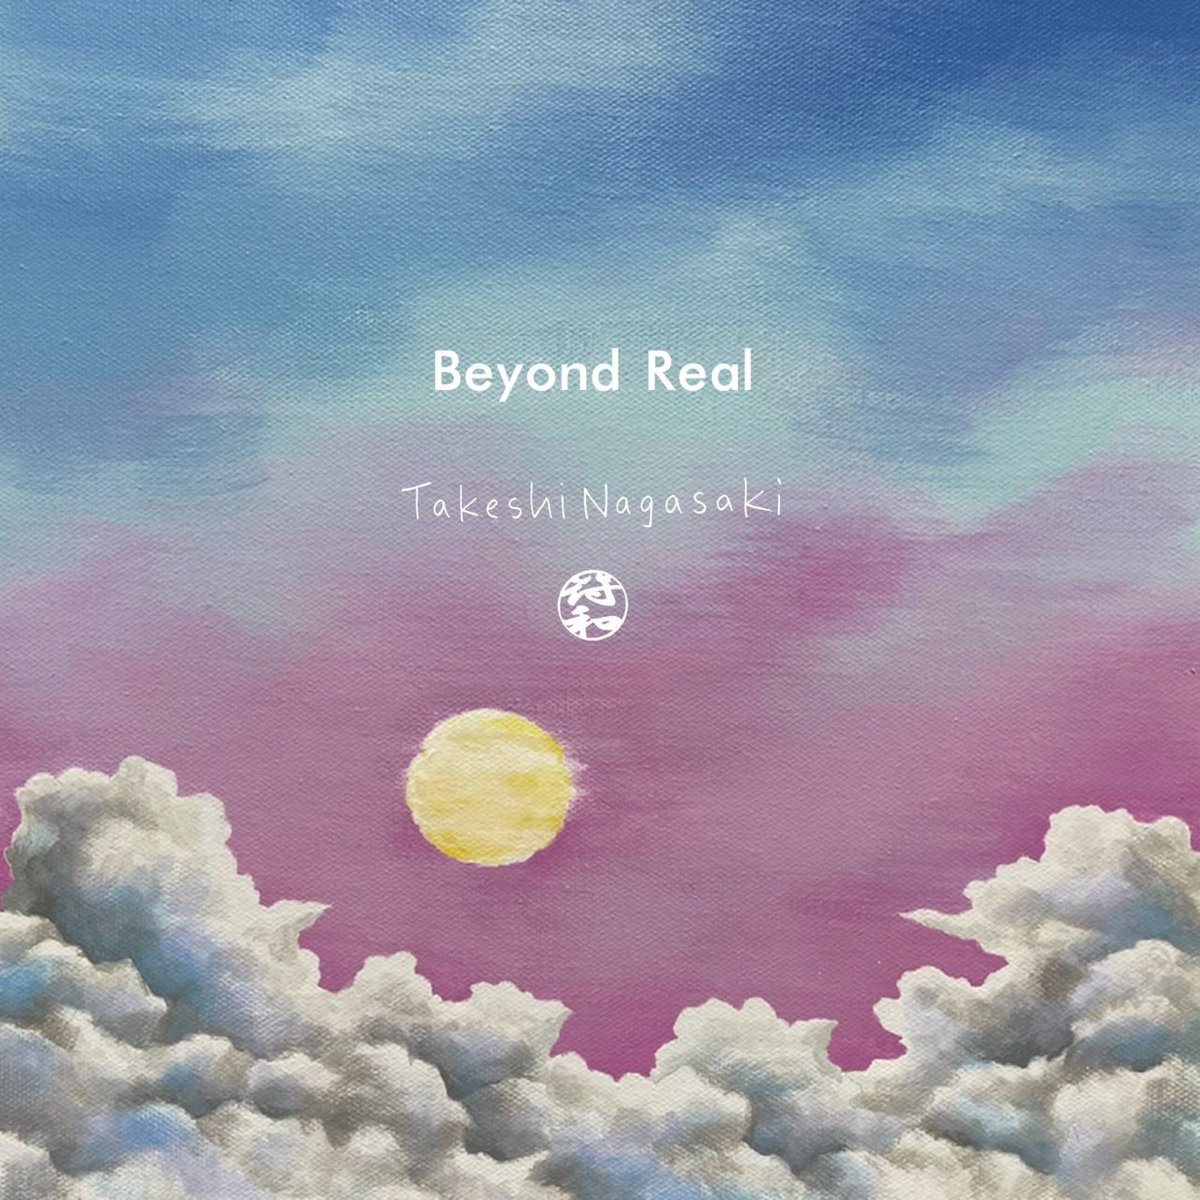 【予約商品 6月12日初回限定発売】
' Beyond Real ' 12inch
符和 × ながさきたけし
ugrrcommunic.base.shop